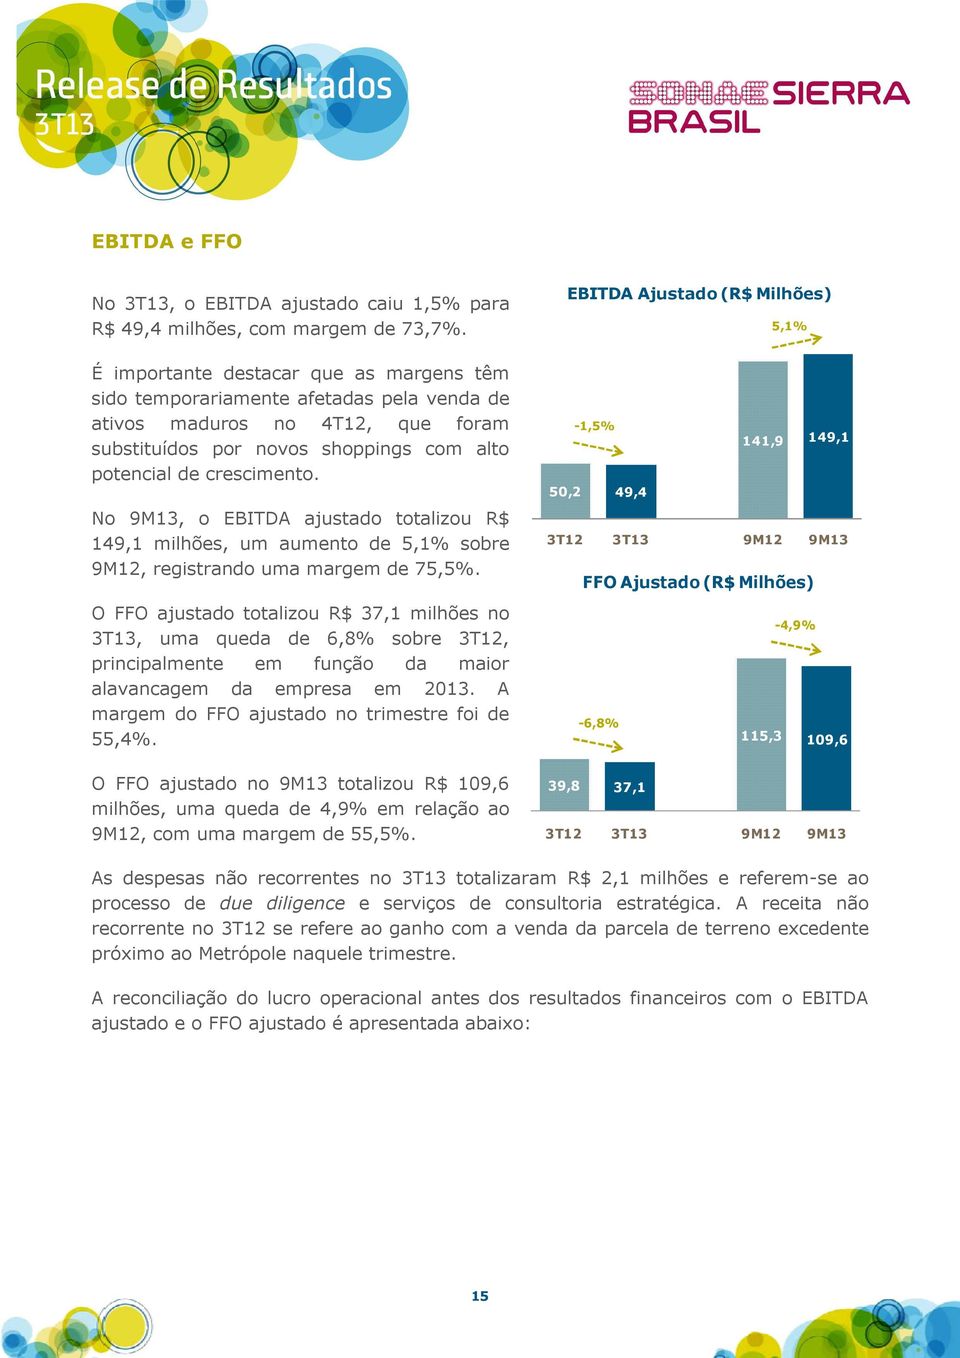 No 9M13, o EBITDA ajustado totalizou R$ 149,1 milhões, um aumento de 5,1% sobre 9M12, registrando uma margem de 75,5%.